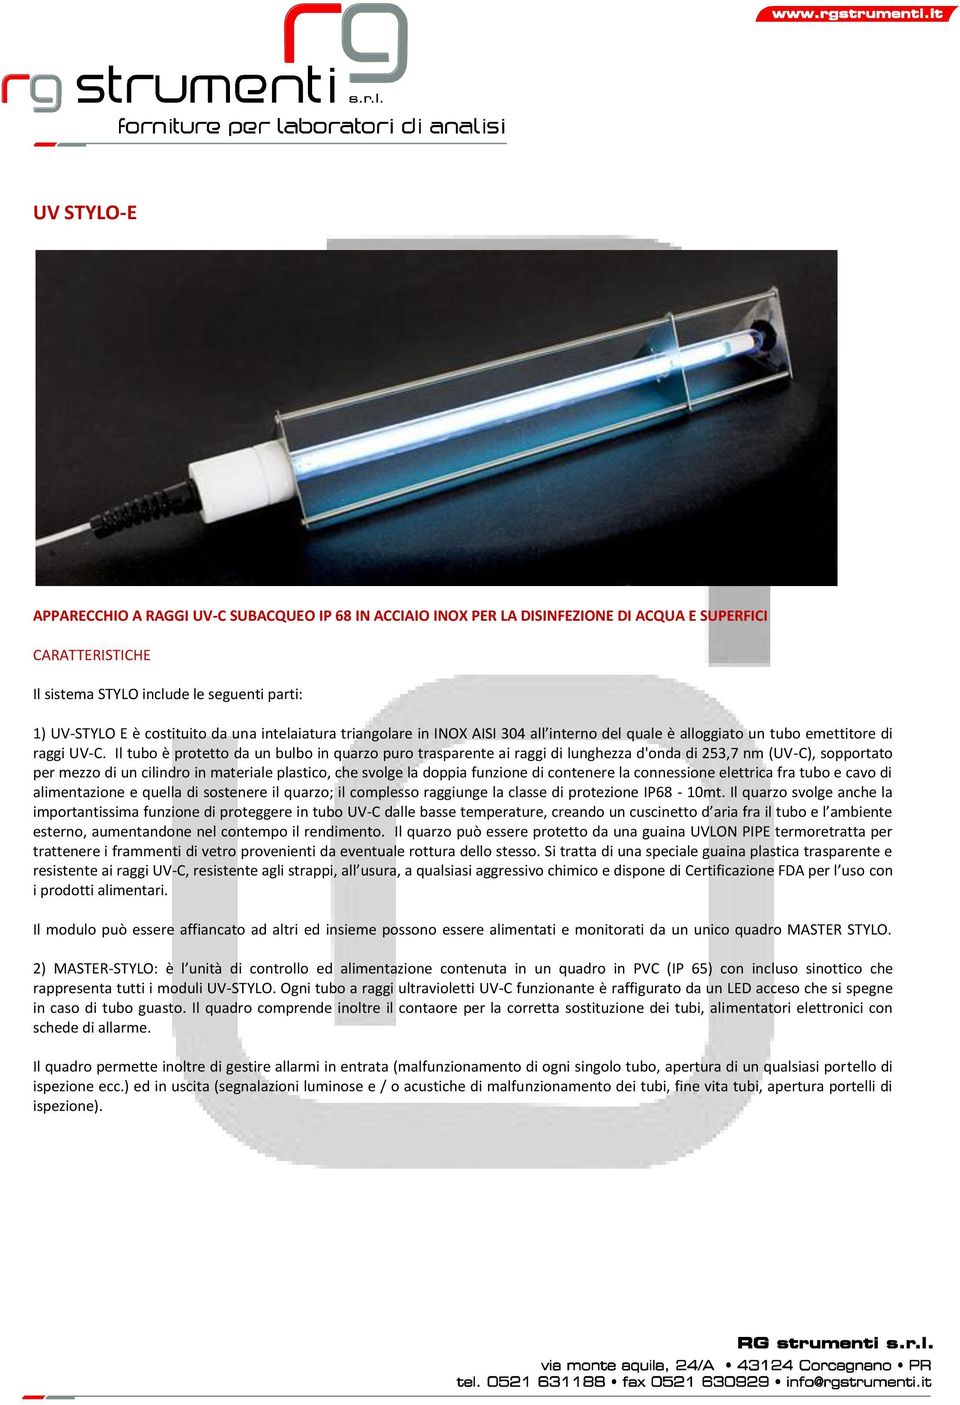 Il tubo è protetto da un bulbo in quarzo puro trasparente ai raggi di lunghezza d'onda di 253,7 nm (UV-C), sopportato per mezzo di un cilindro in materiale plastico, che svolge la doppia funzione di